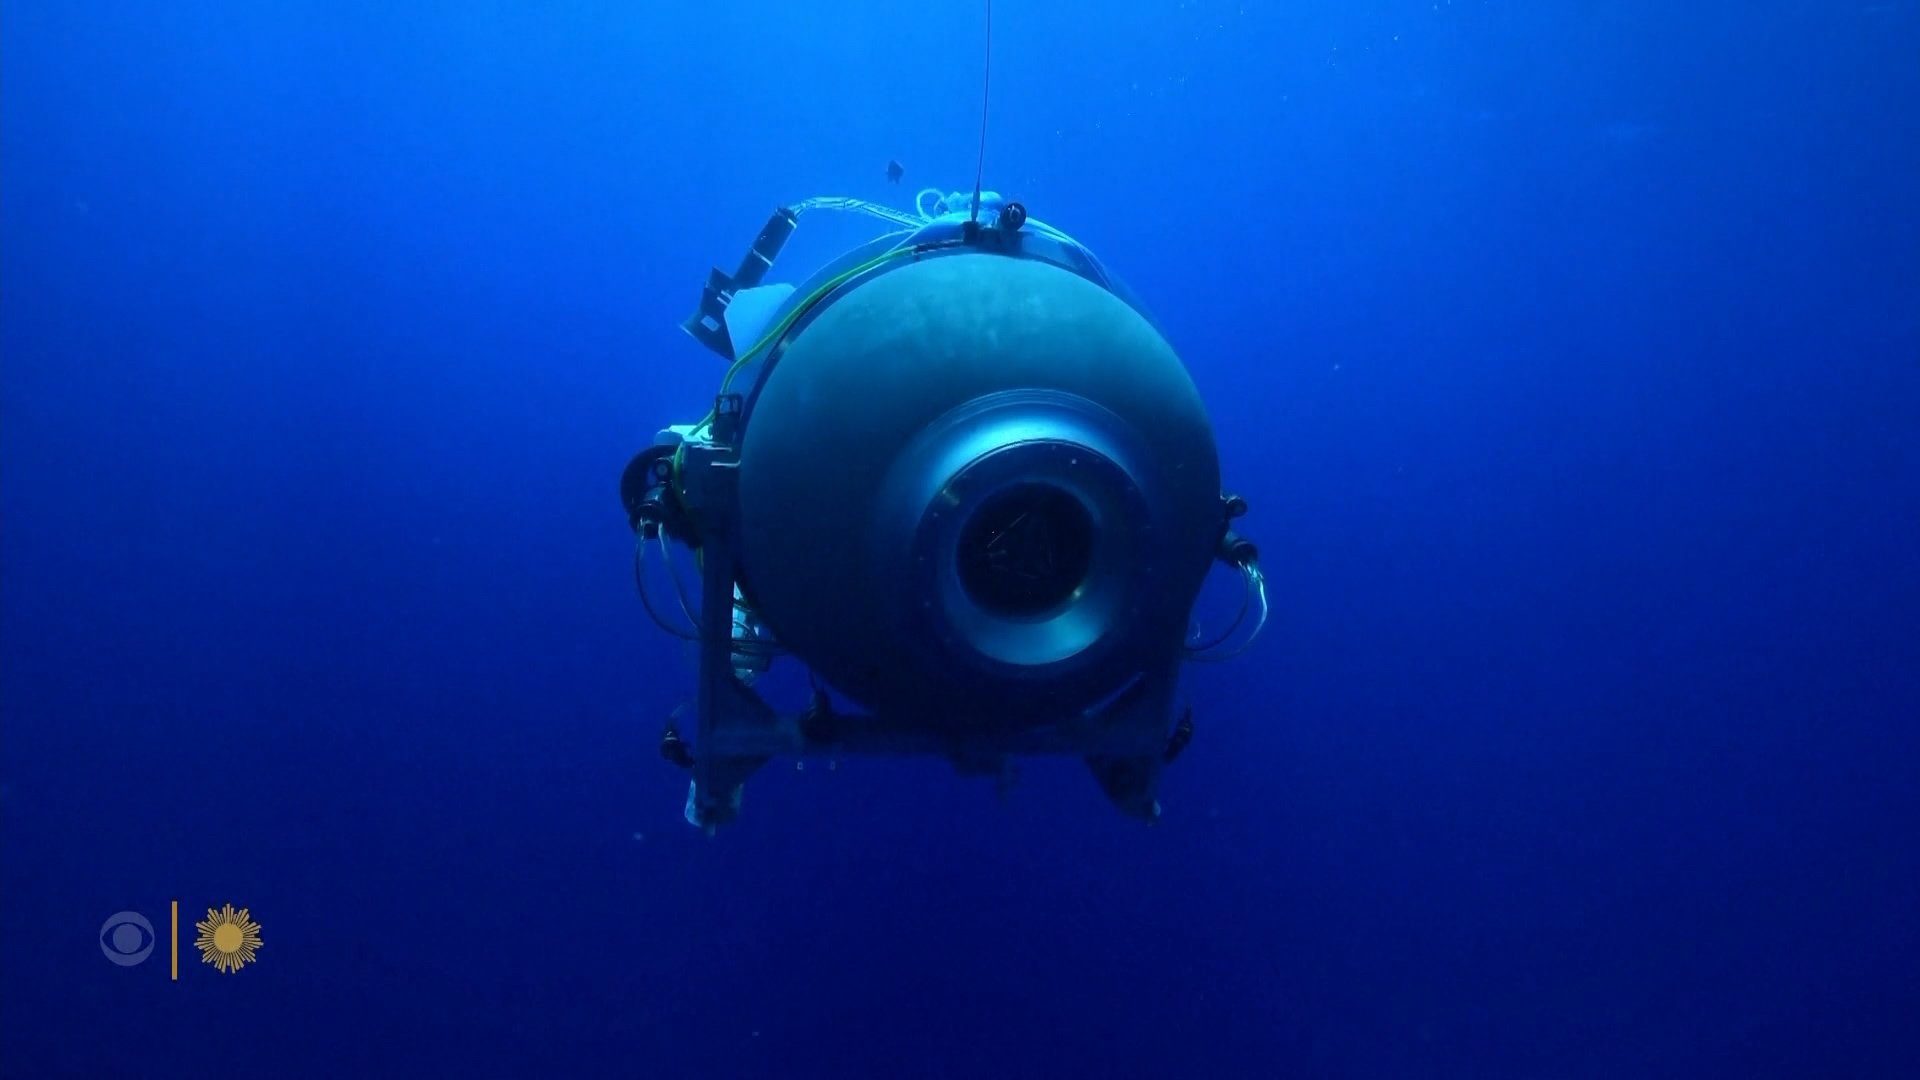 Sottomarino disperso, le ultime notizie. DIRETTA - La Stampa